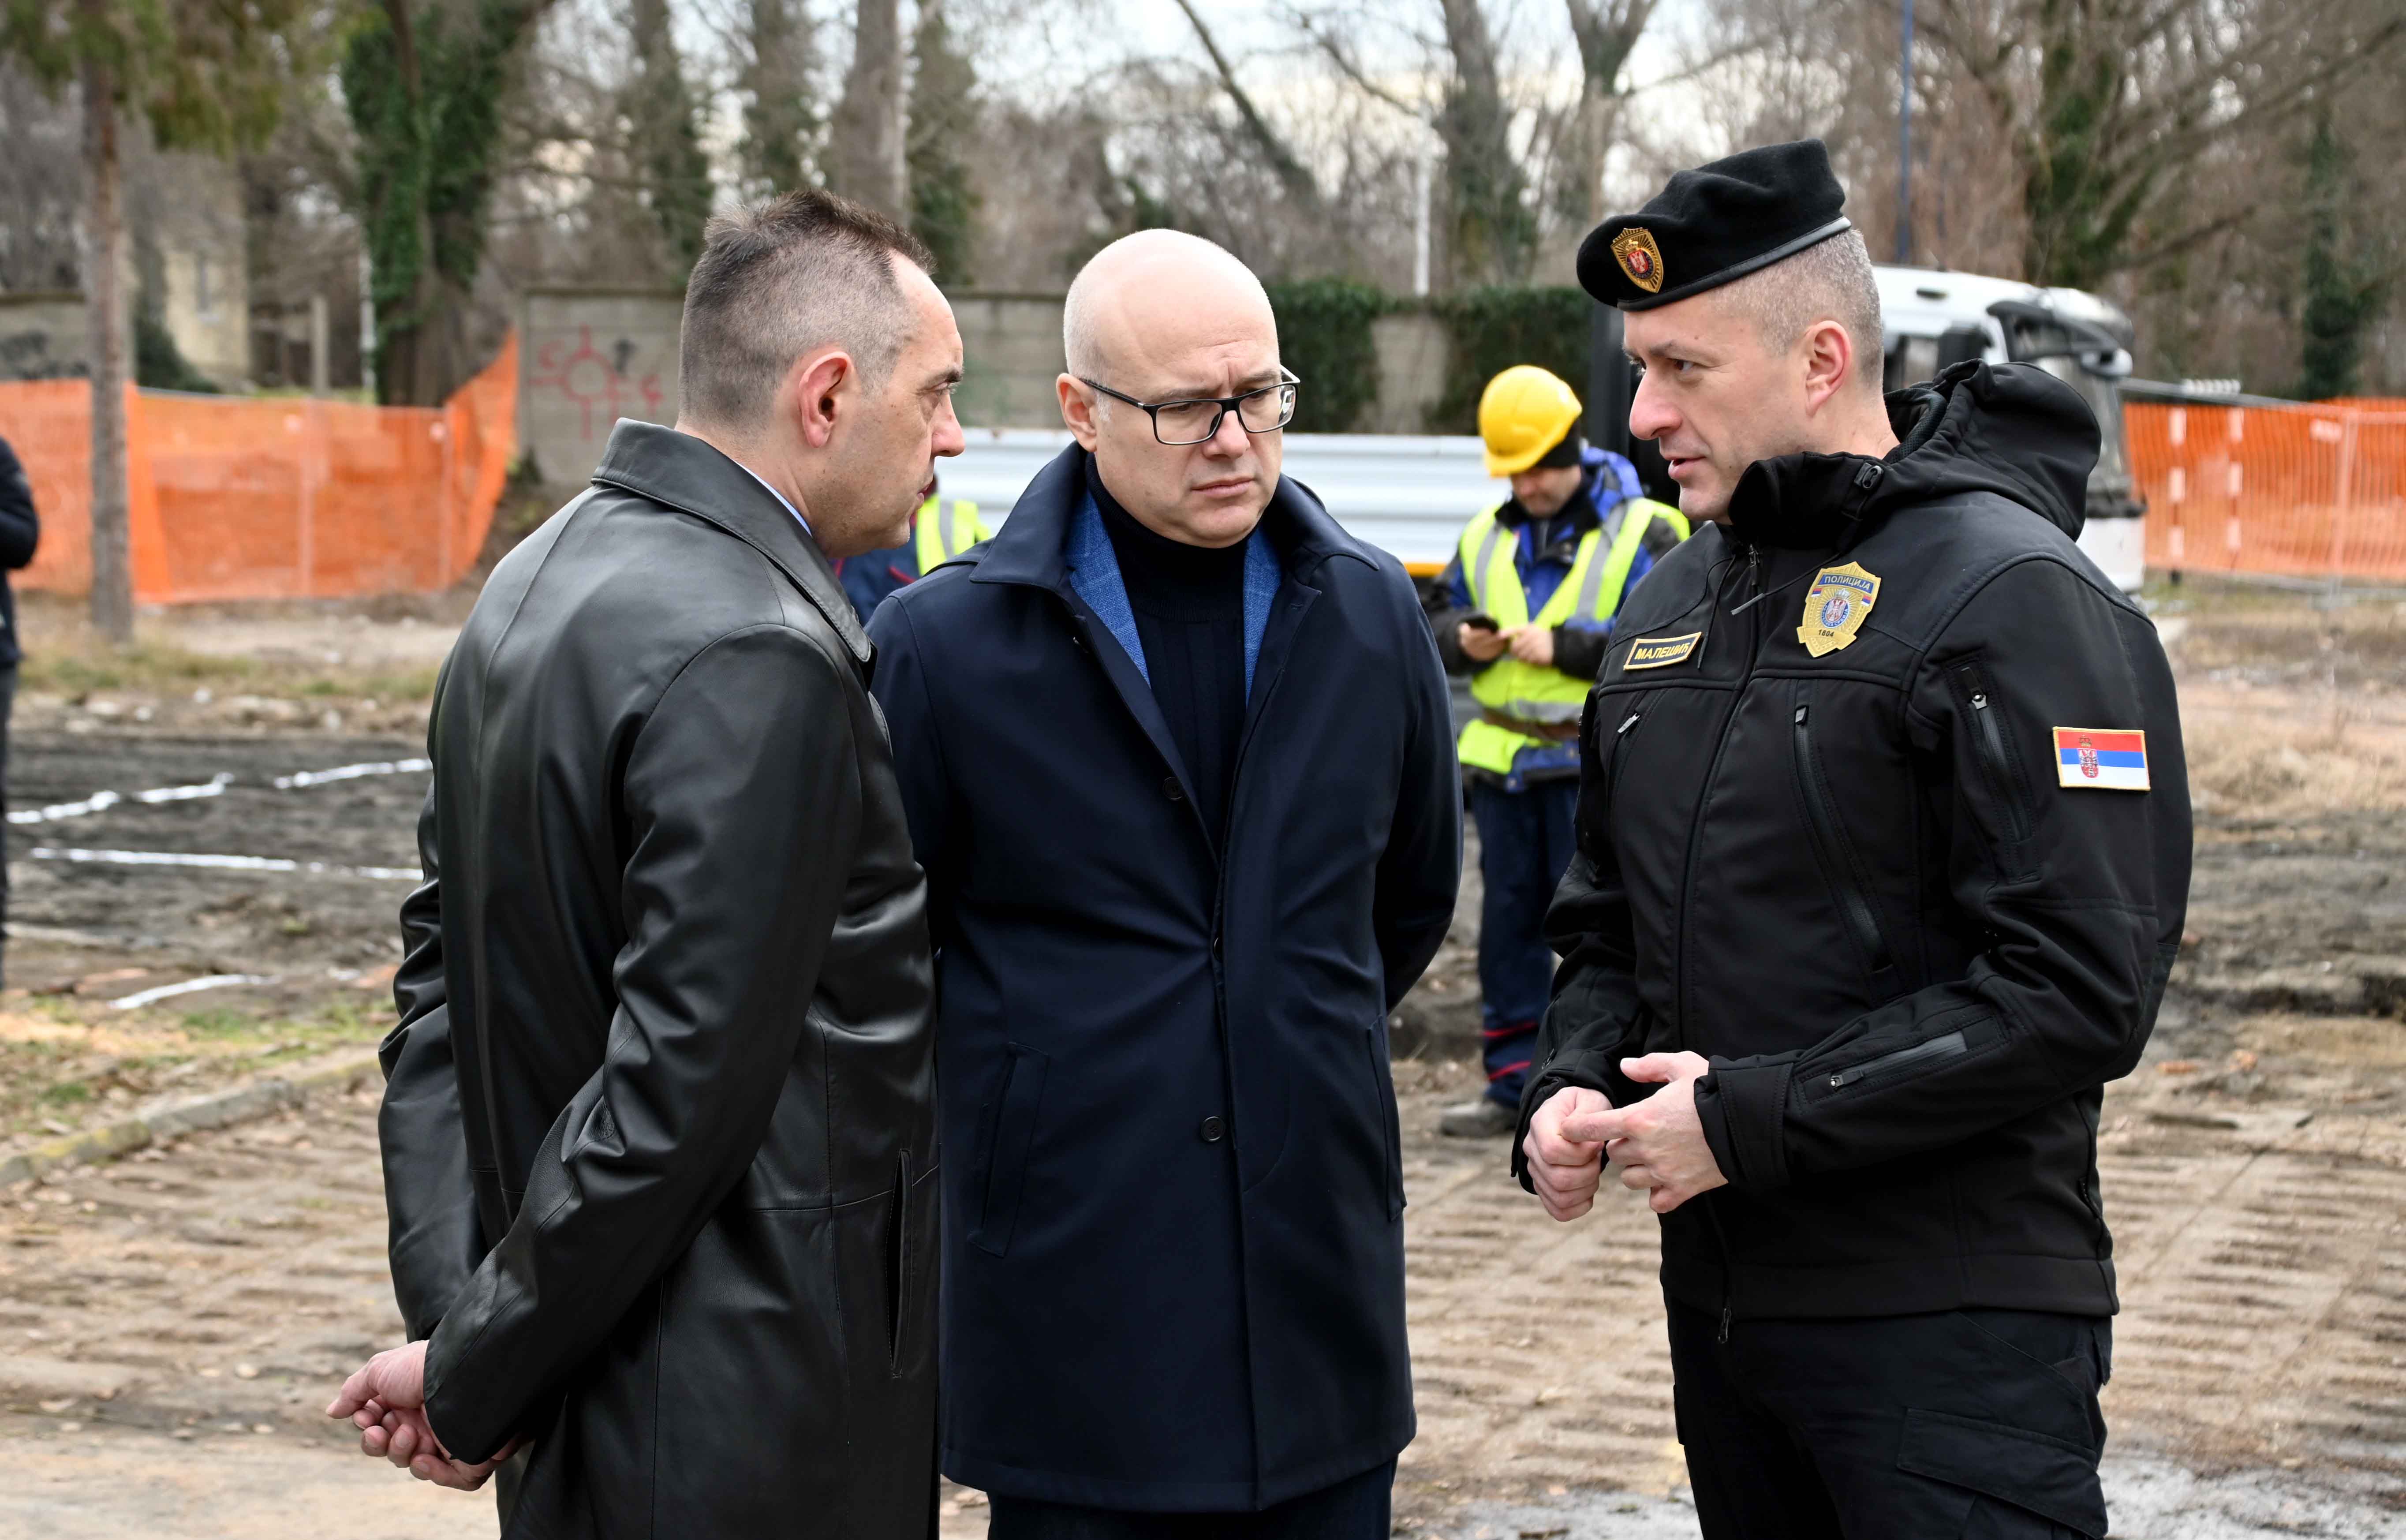 Ministar Aleksandar Vulin i gradonačelnik Novog Sada Miloš Vučević položili su kamen temelјac za izgradnju nove Policijske ispostave